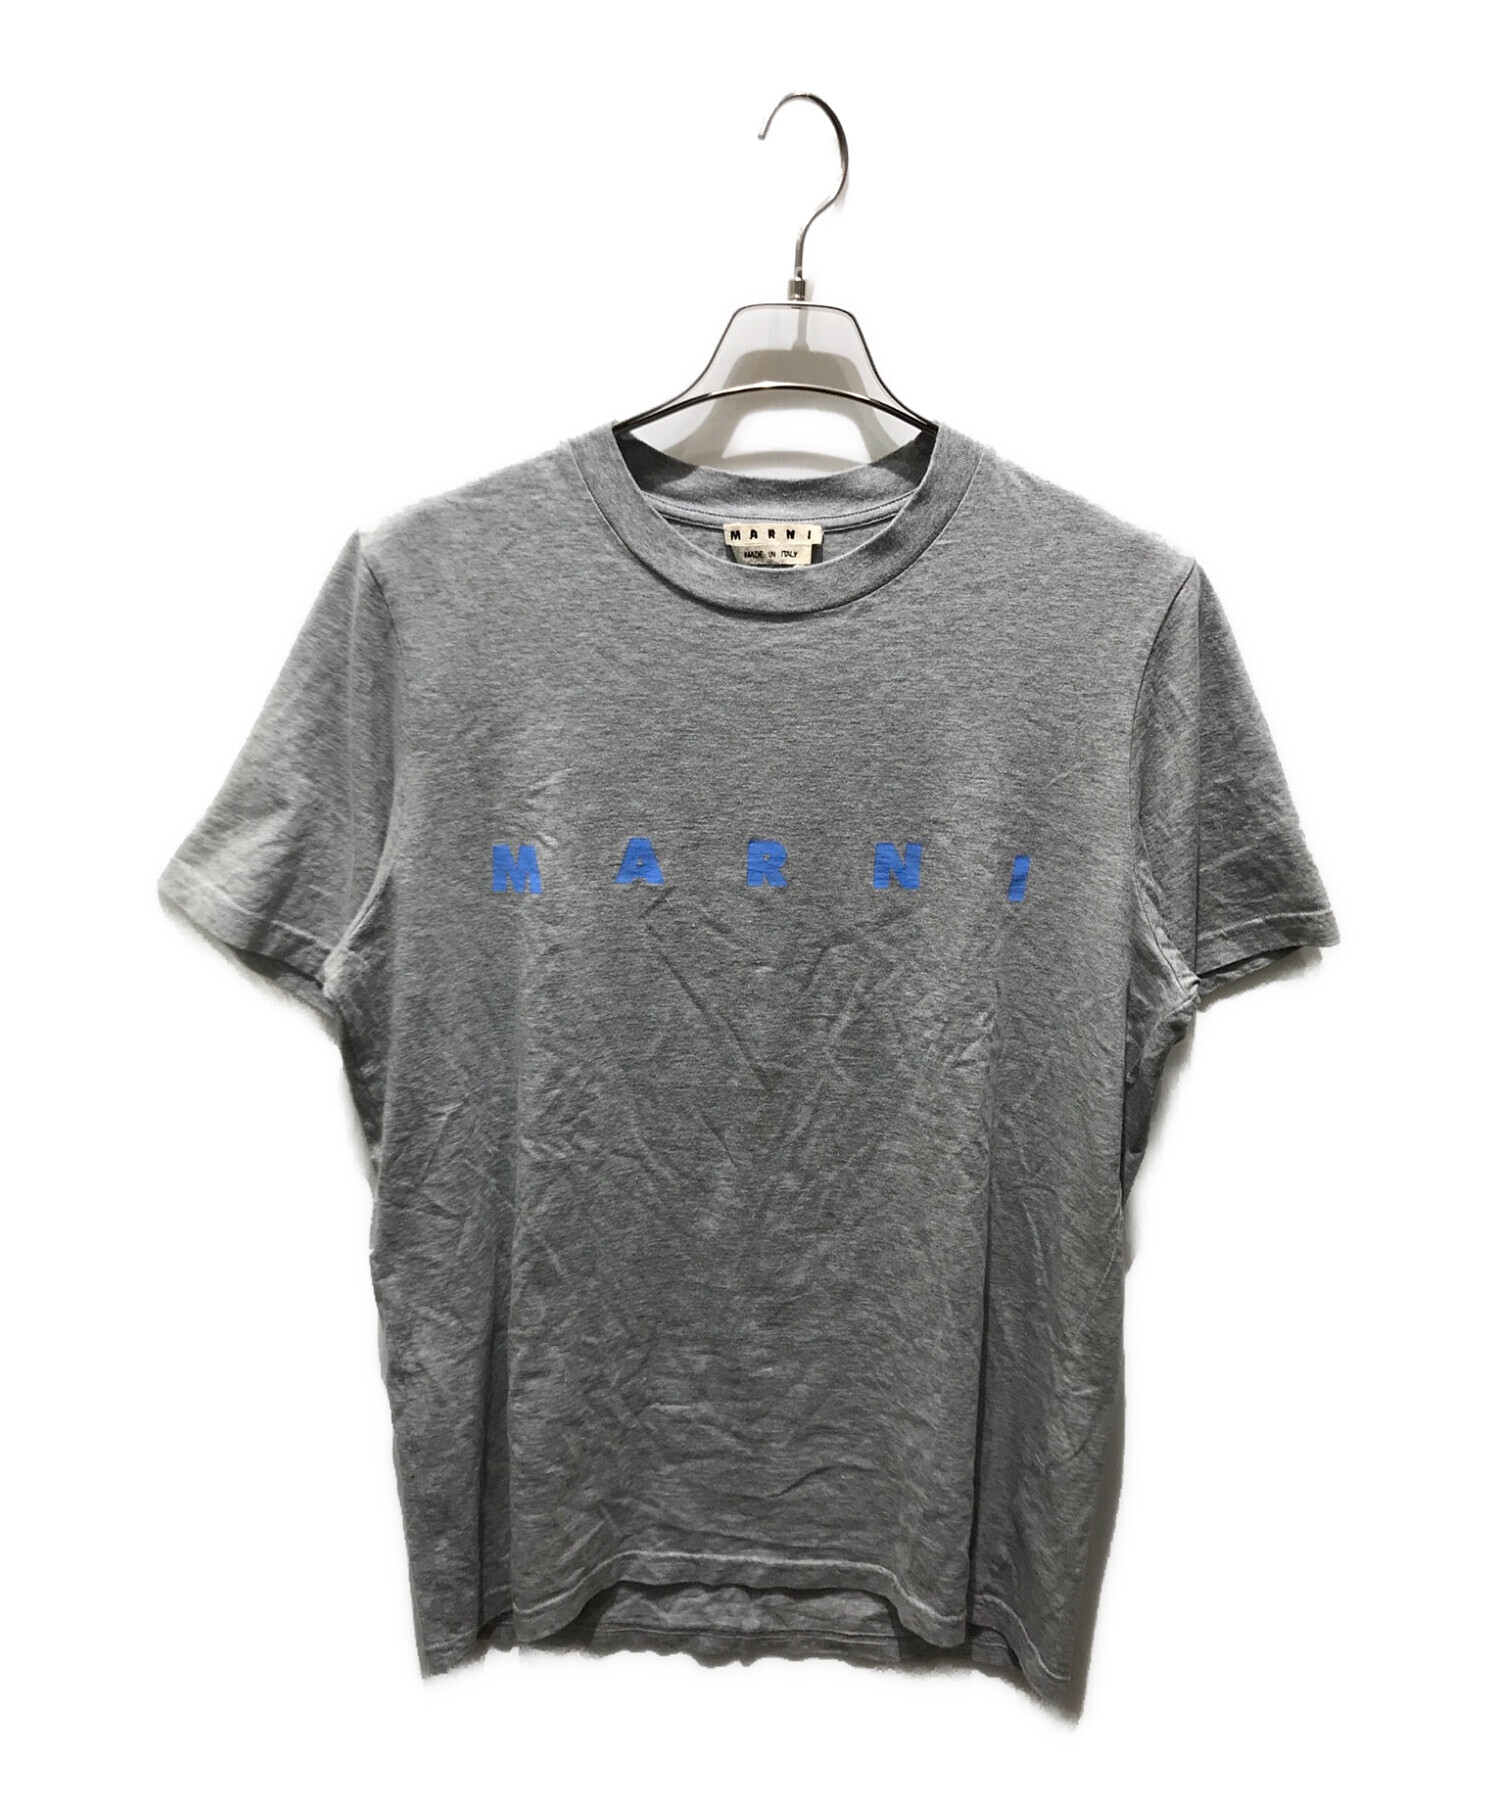 MARNI (マルニ) ロゴプリントTシャツ グレー サイズ:48